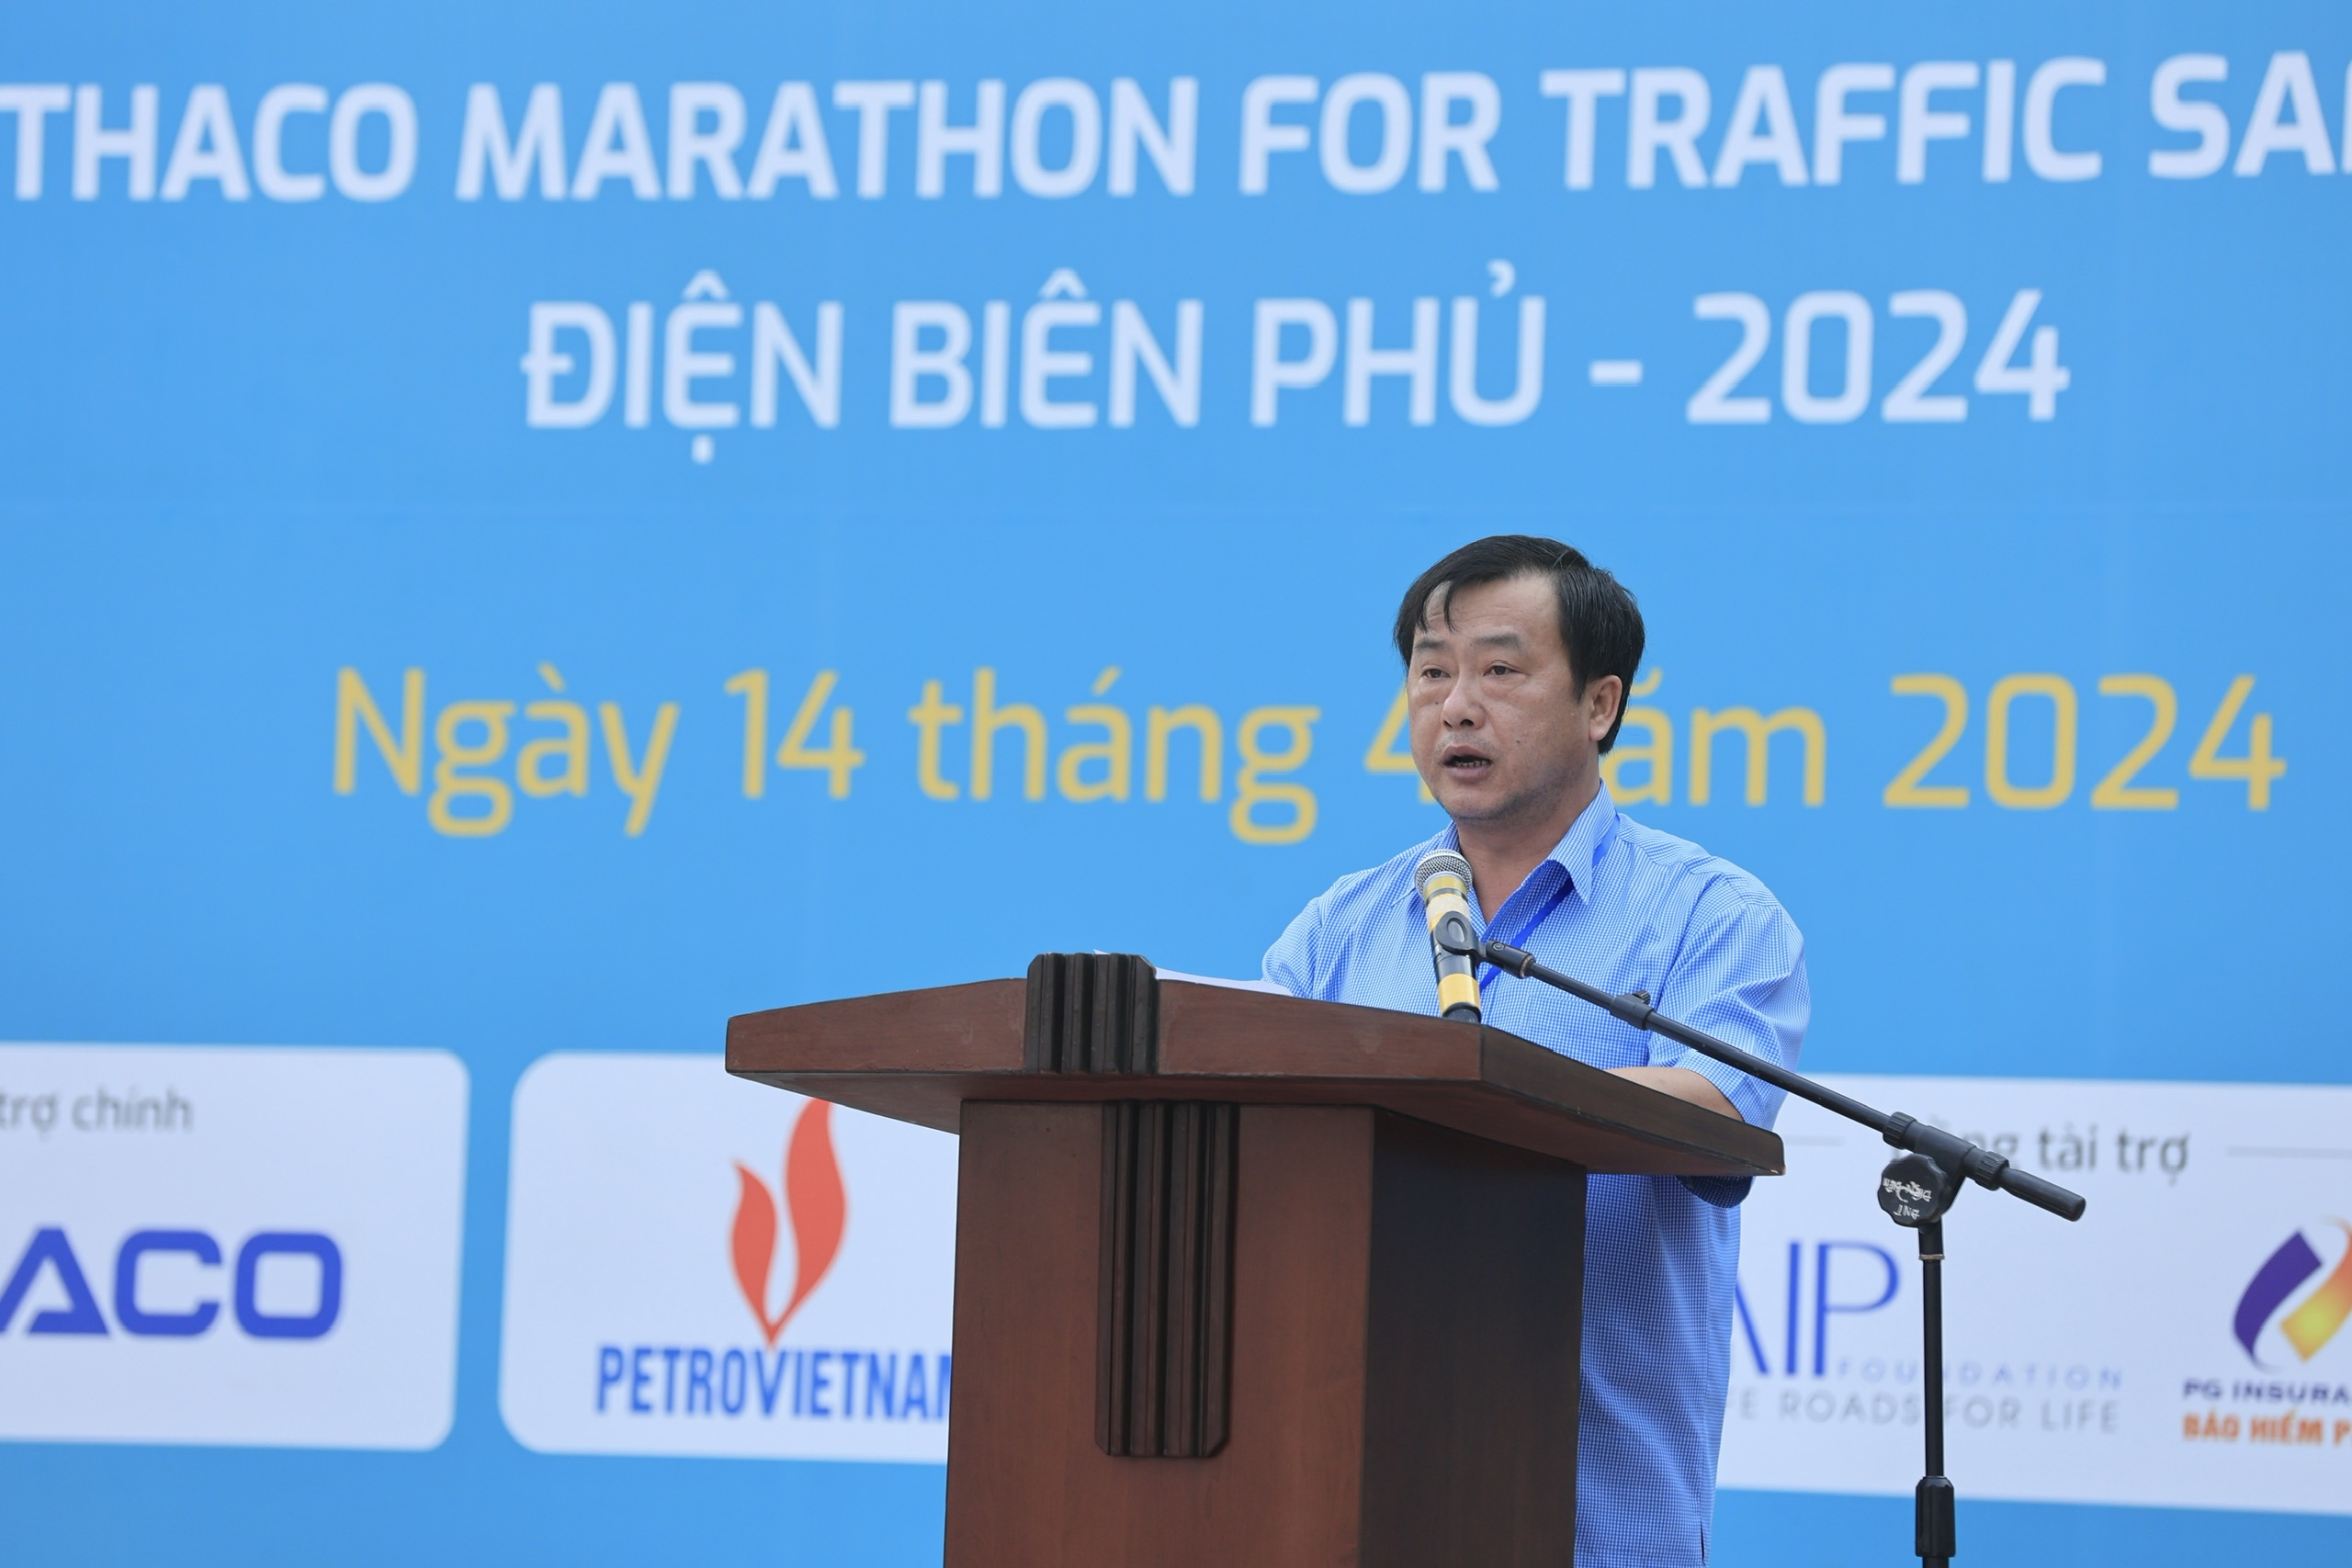 Trực tiếp: Giải THACO Marathon vì ATGT - Điện Biên Phủ 2024 thành công rực rỡ- Ảnh 34.